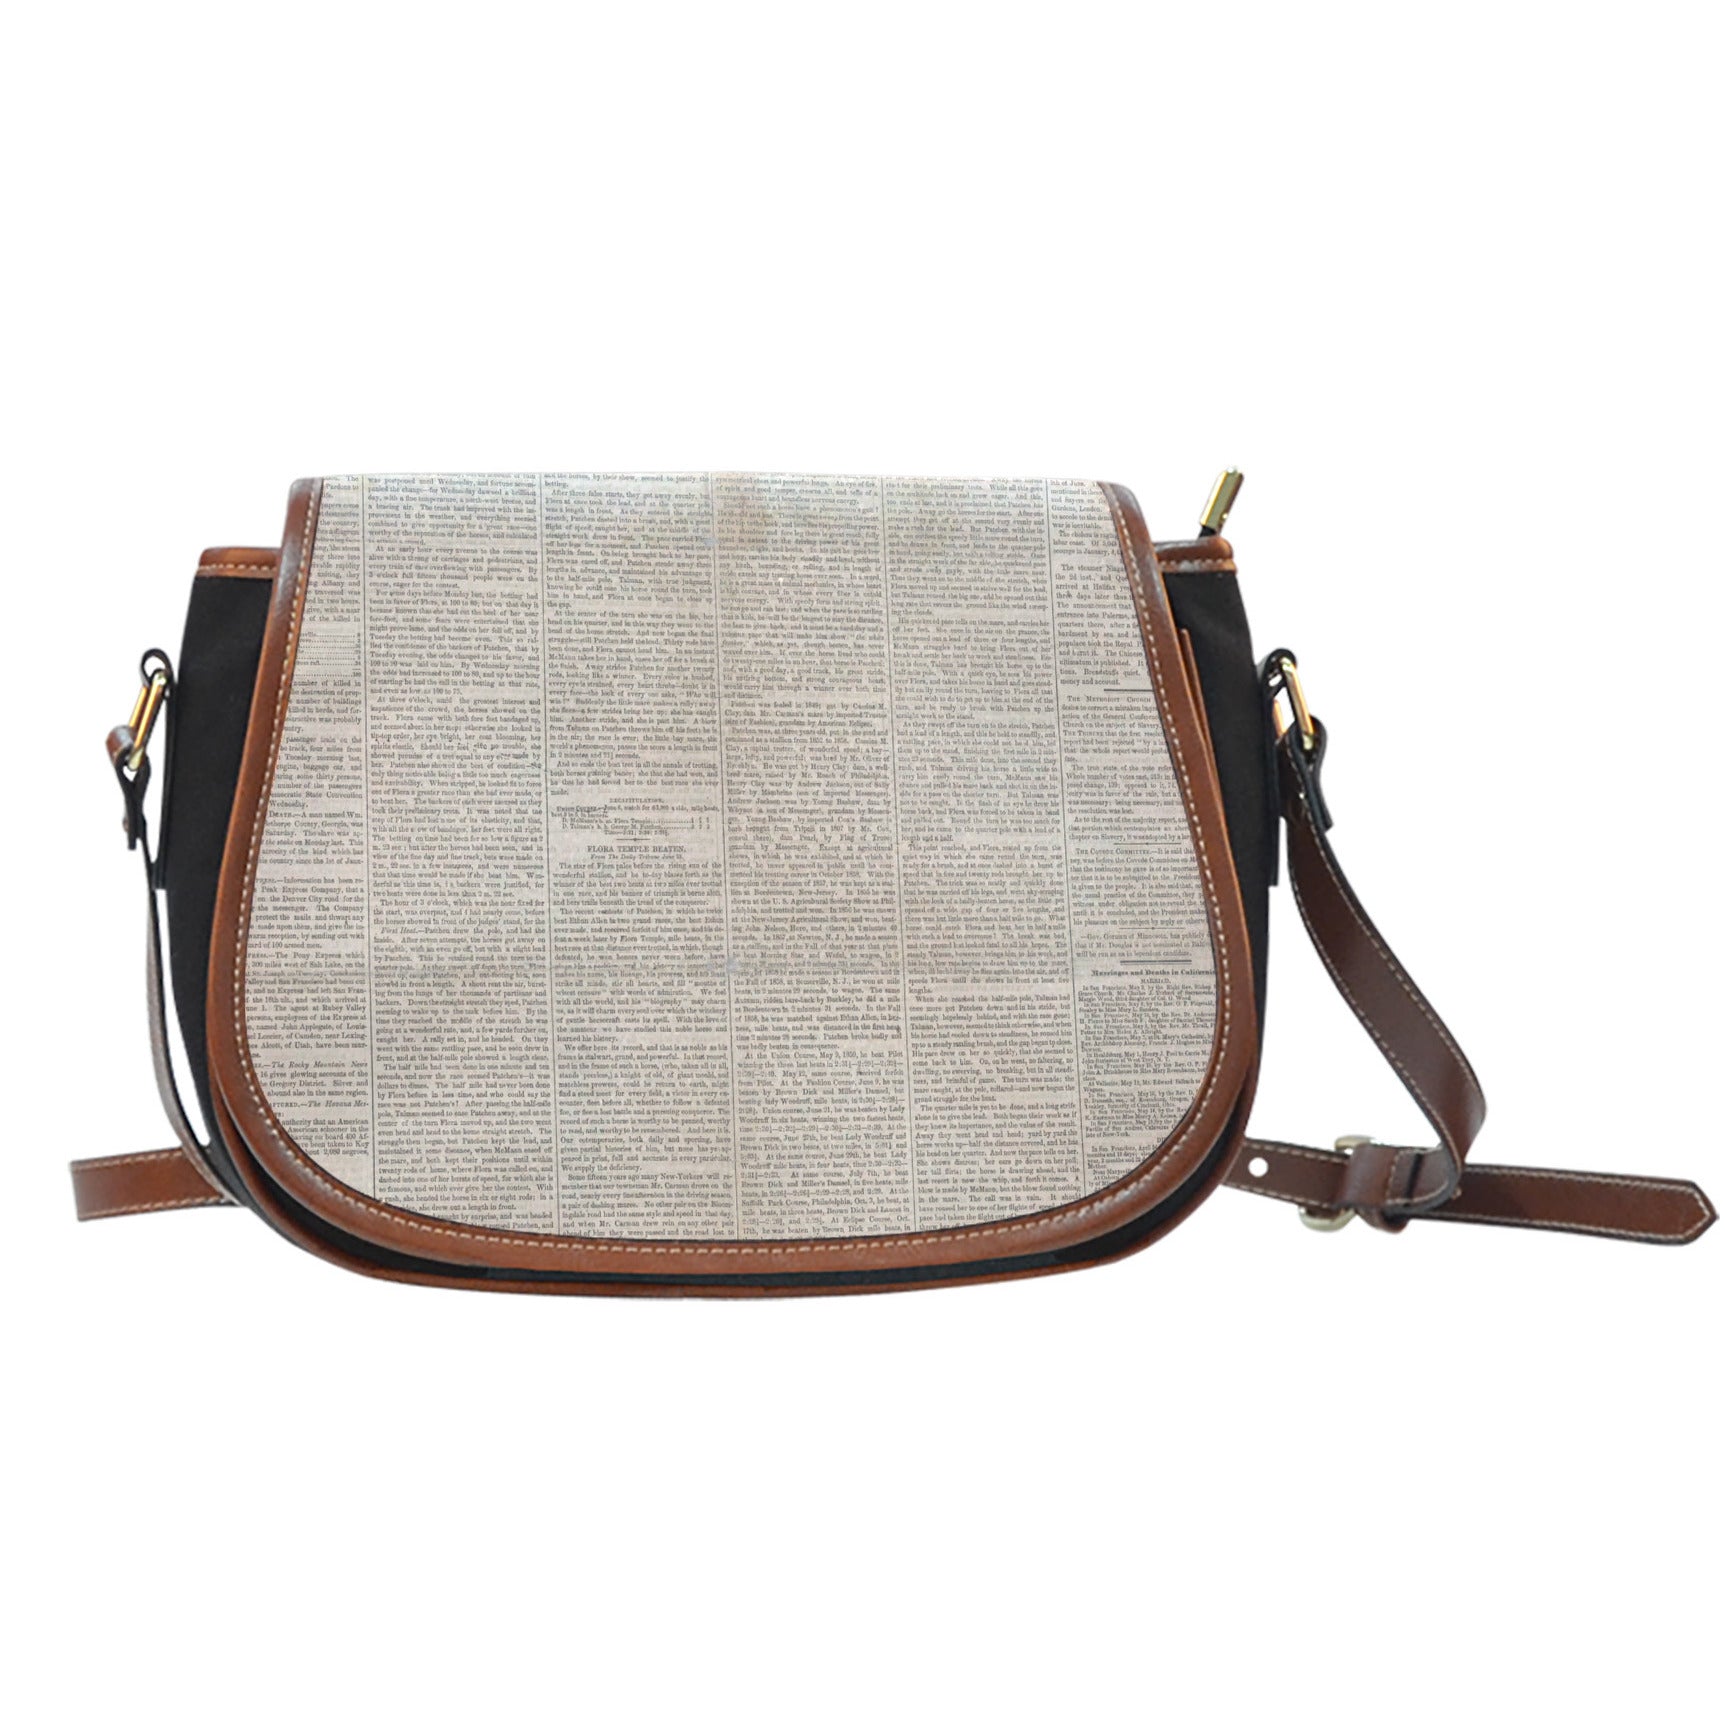 Old Newspaper Themed Design 11 Crossbody Shoulder Canvas Leather Saddle Bag